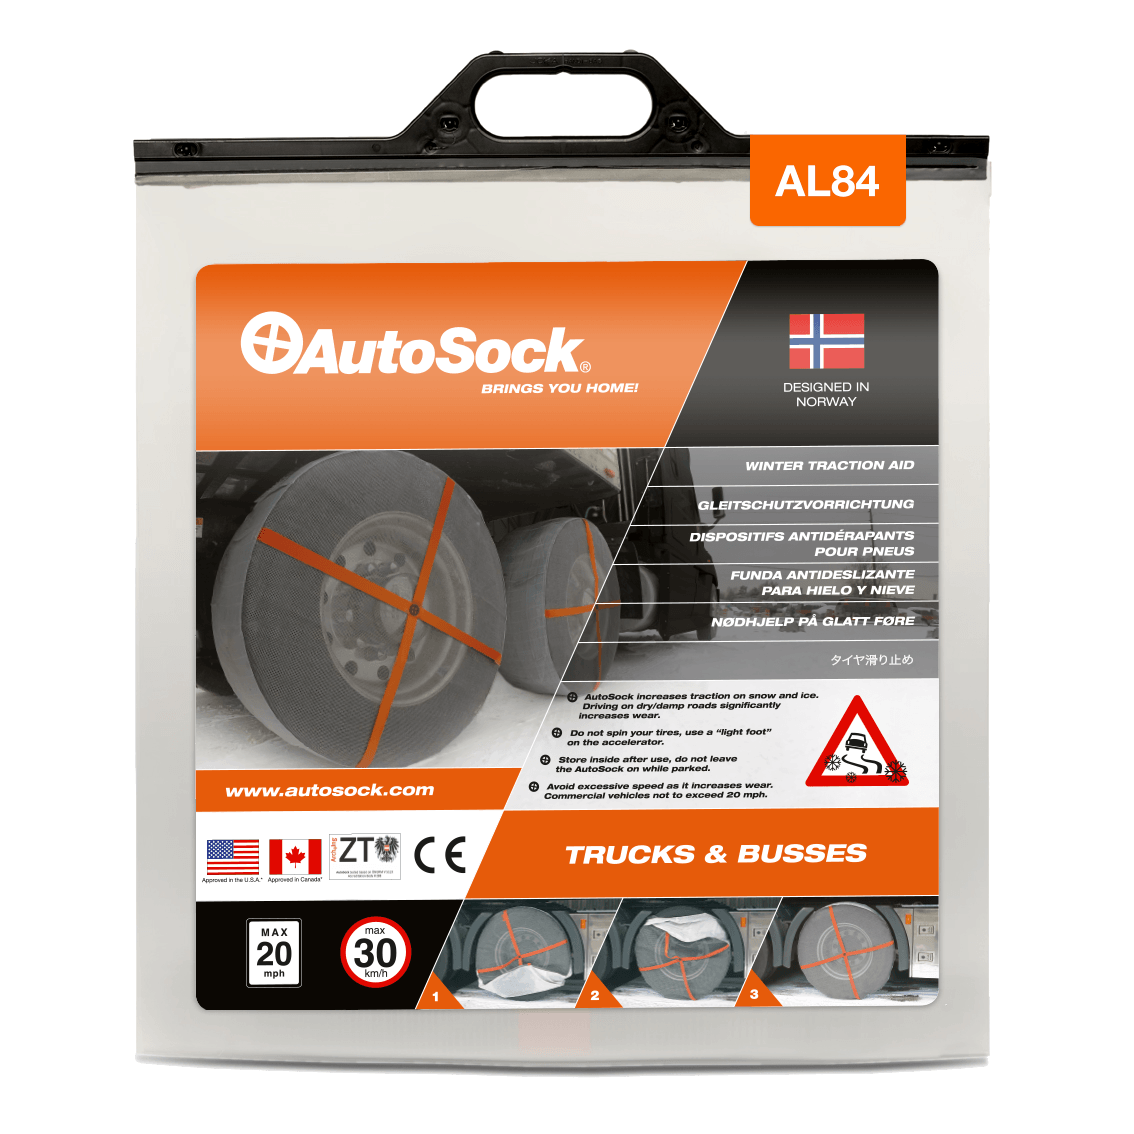 Emballage du produit AutoSock AL 84 AL84 pour camions (vue de face)